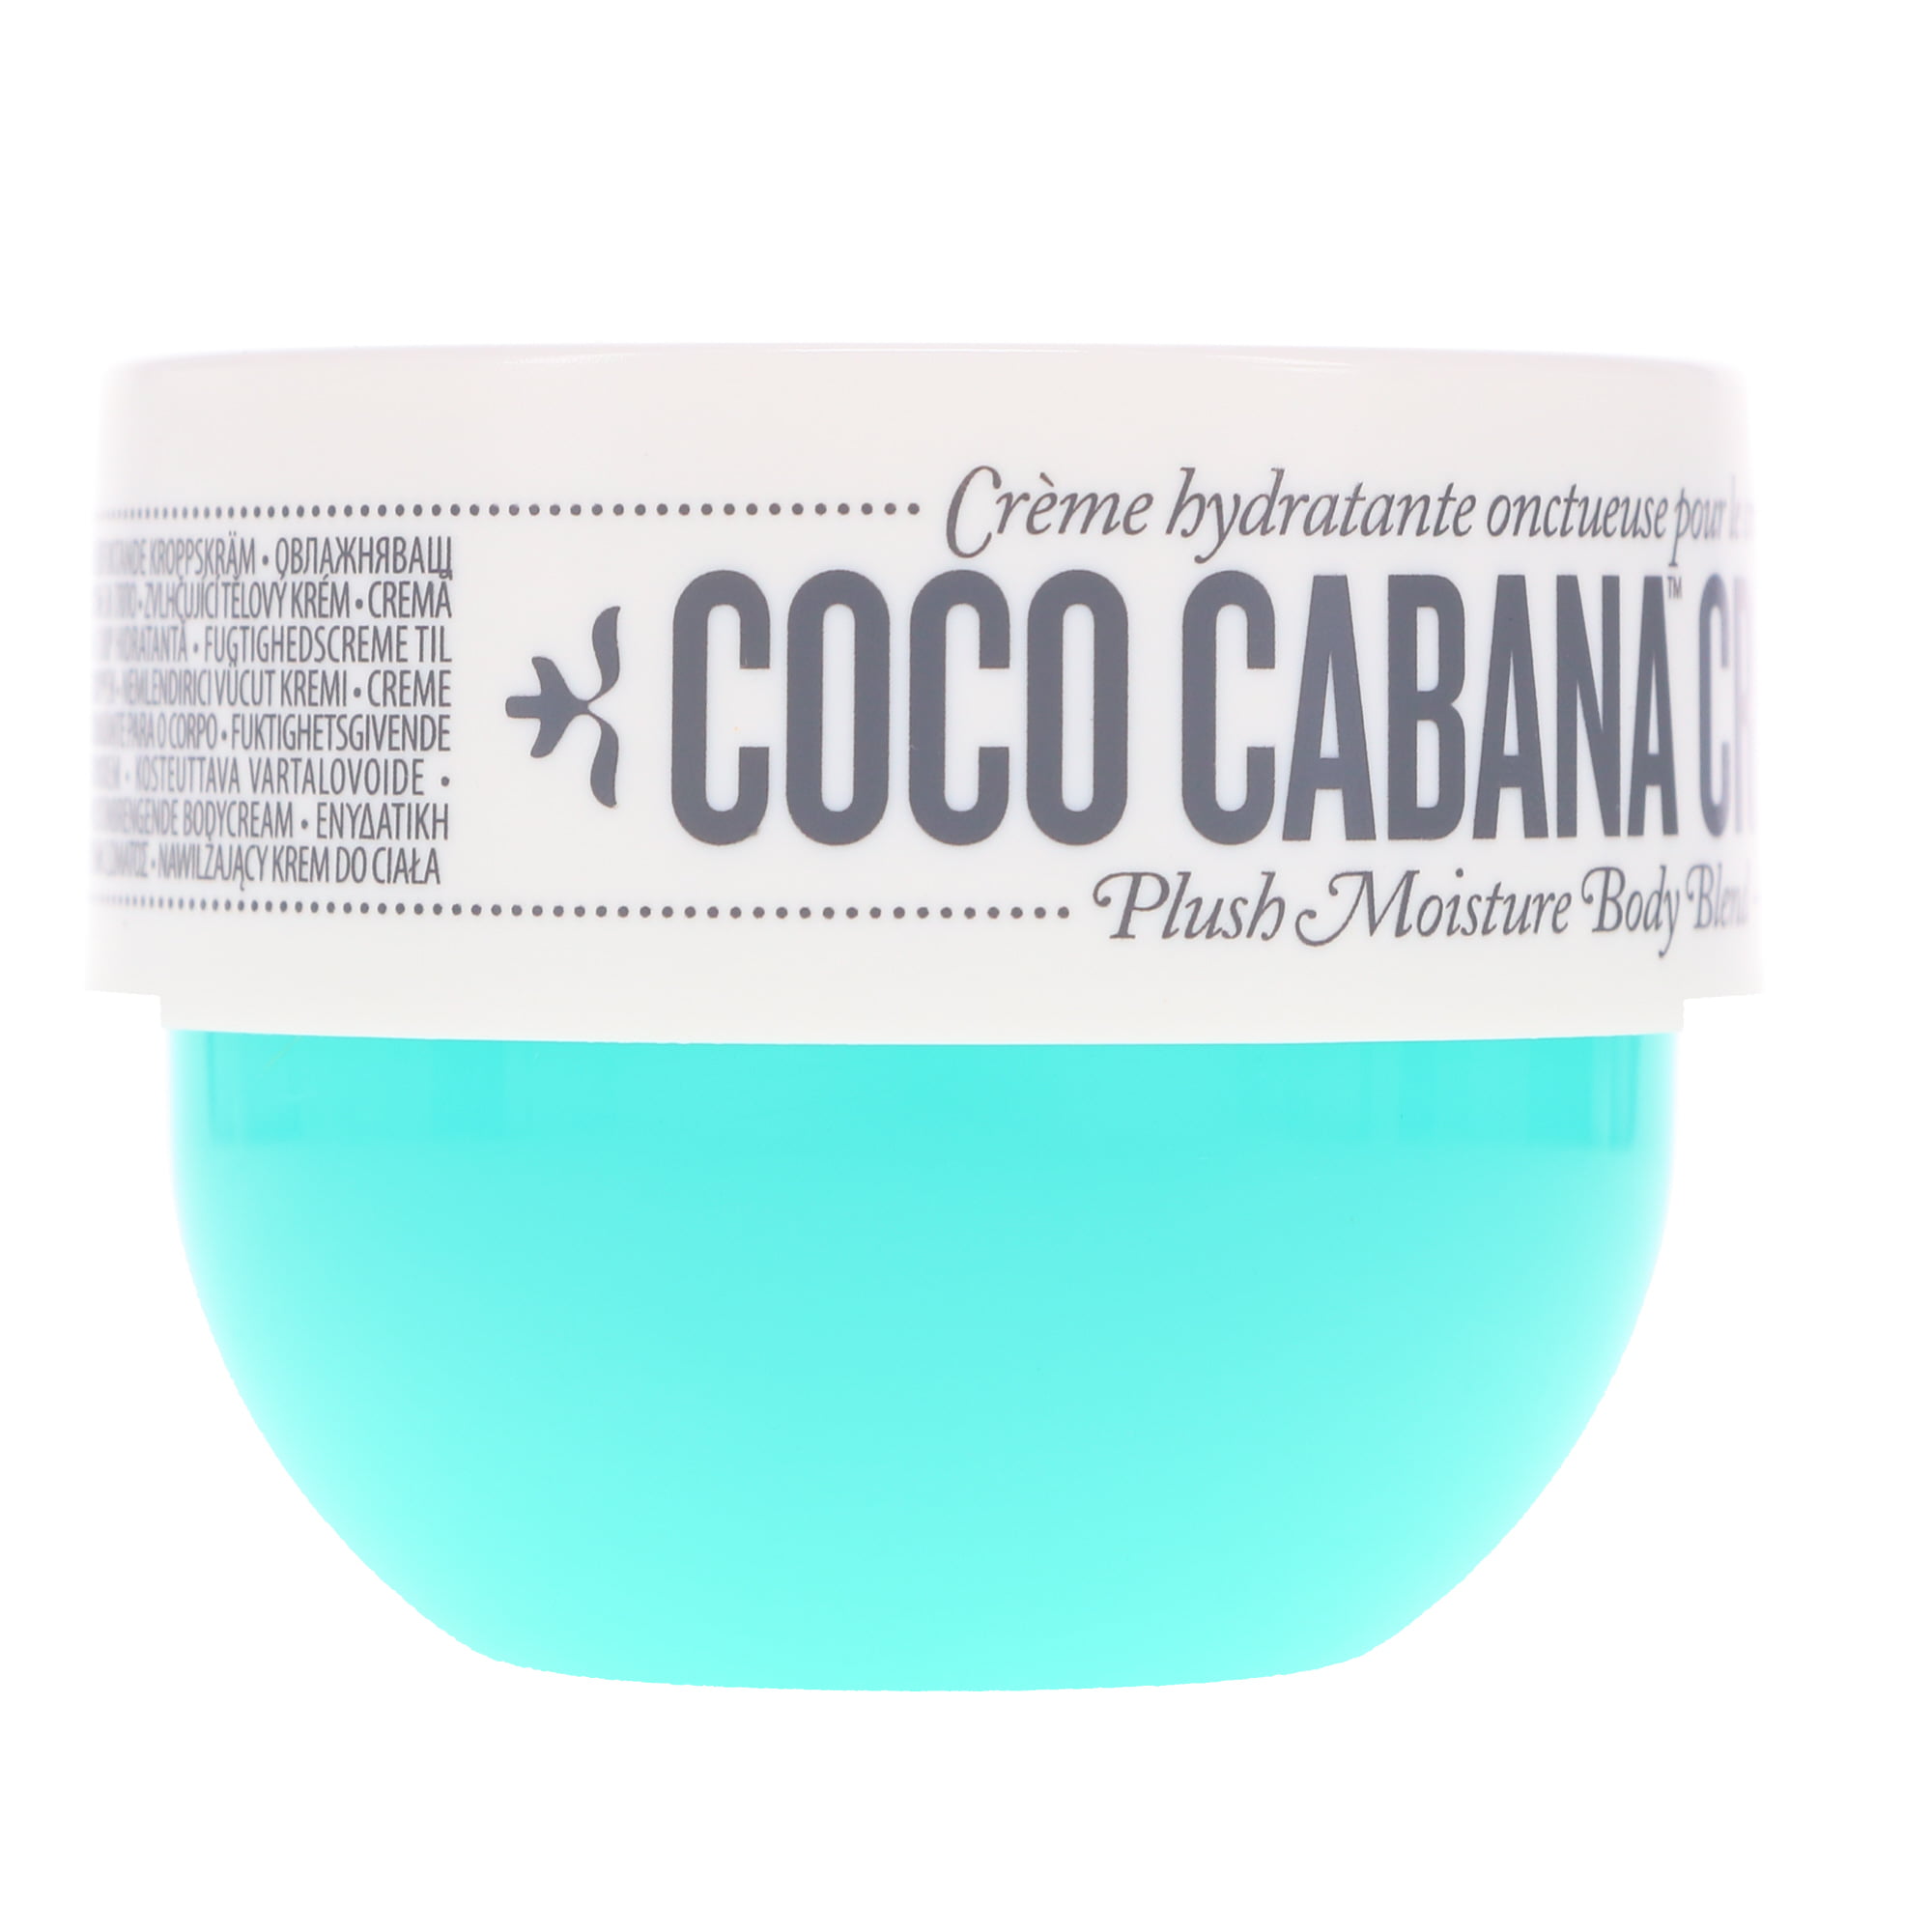 Coco Cabana Cream by Sol de Janeiro for Unisex - 2.5 oz Cream